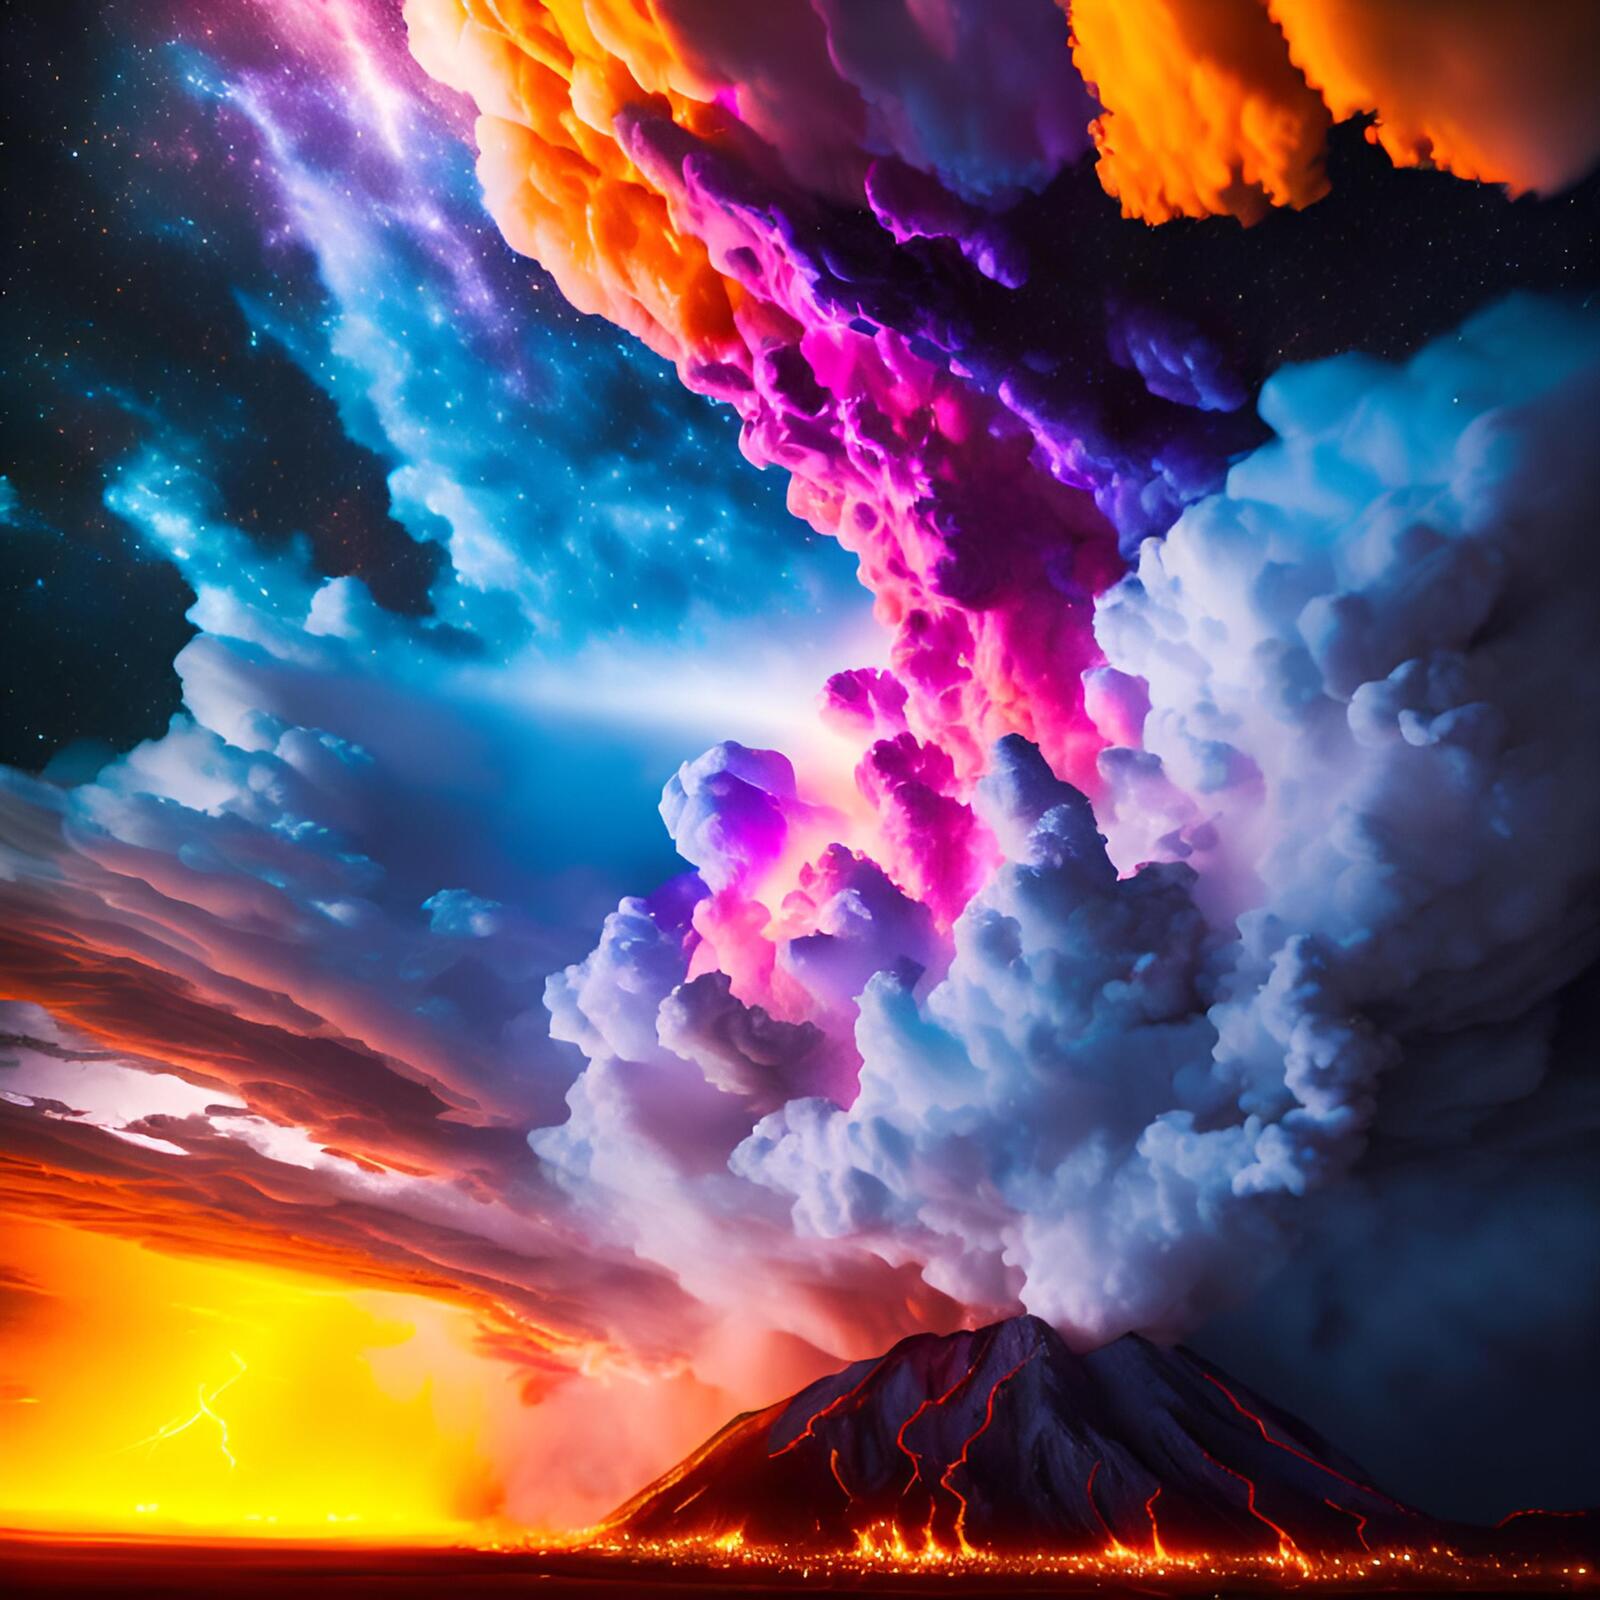 Бесплатное фото Извержение вулкана с разноцветным дымом на фоне звездного неба